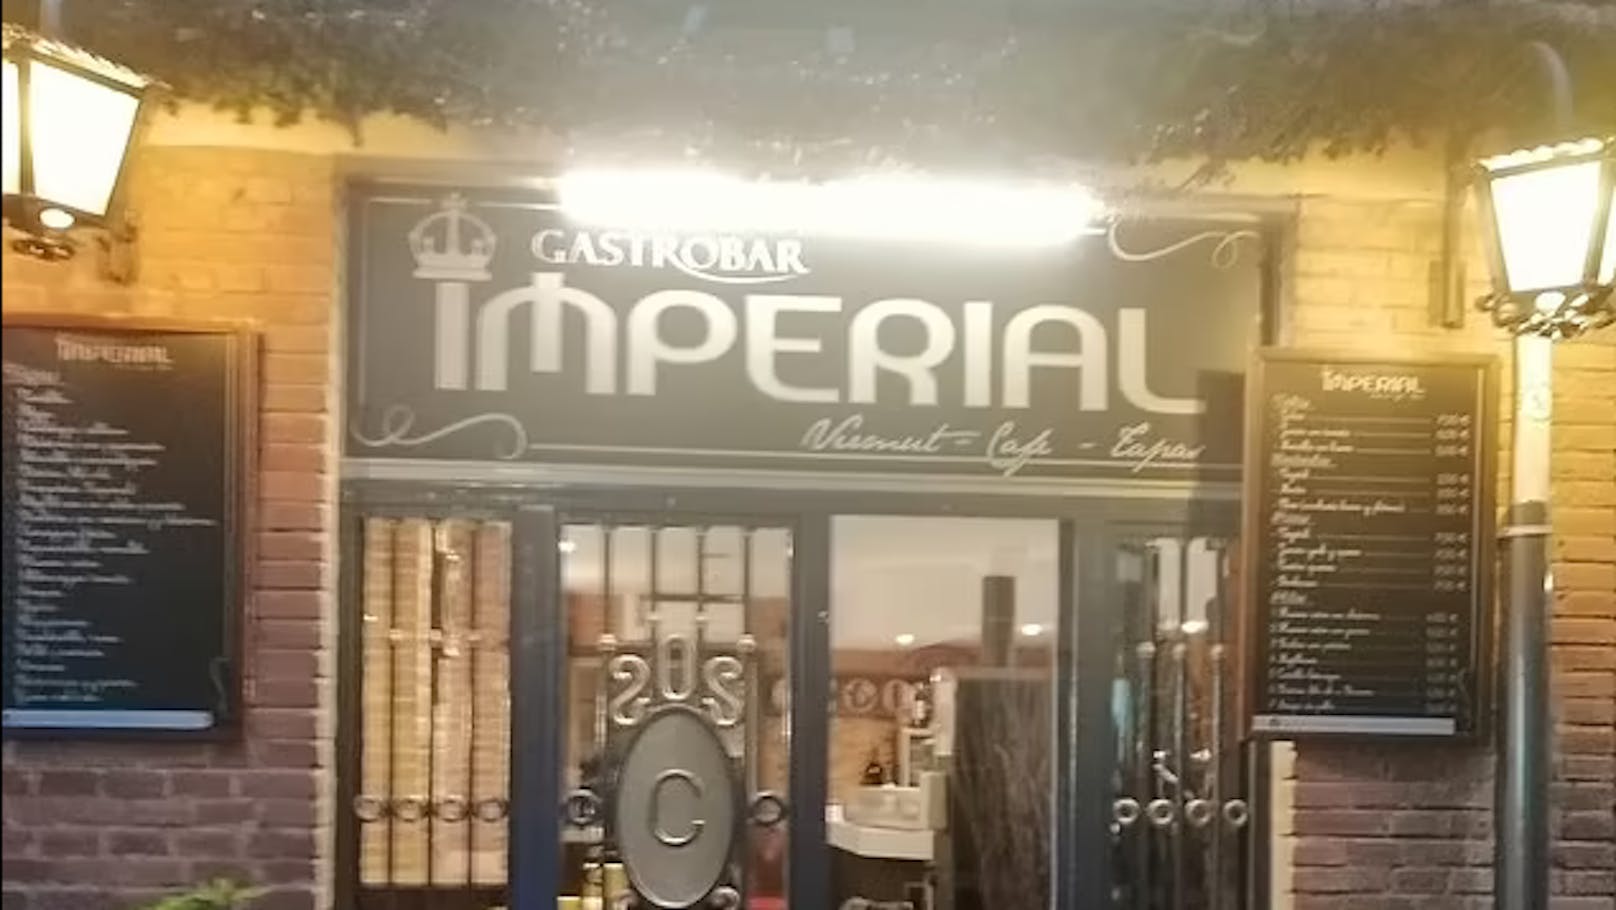 Bei dem Lokal handelt es sich um die "Imperial Bar" in Zamora.